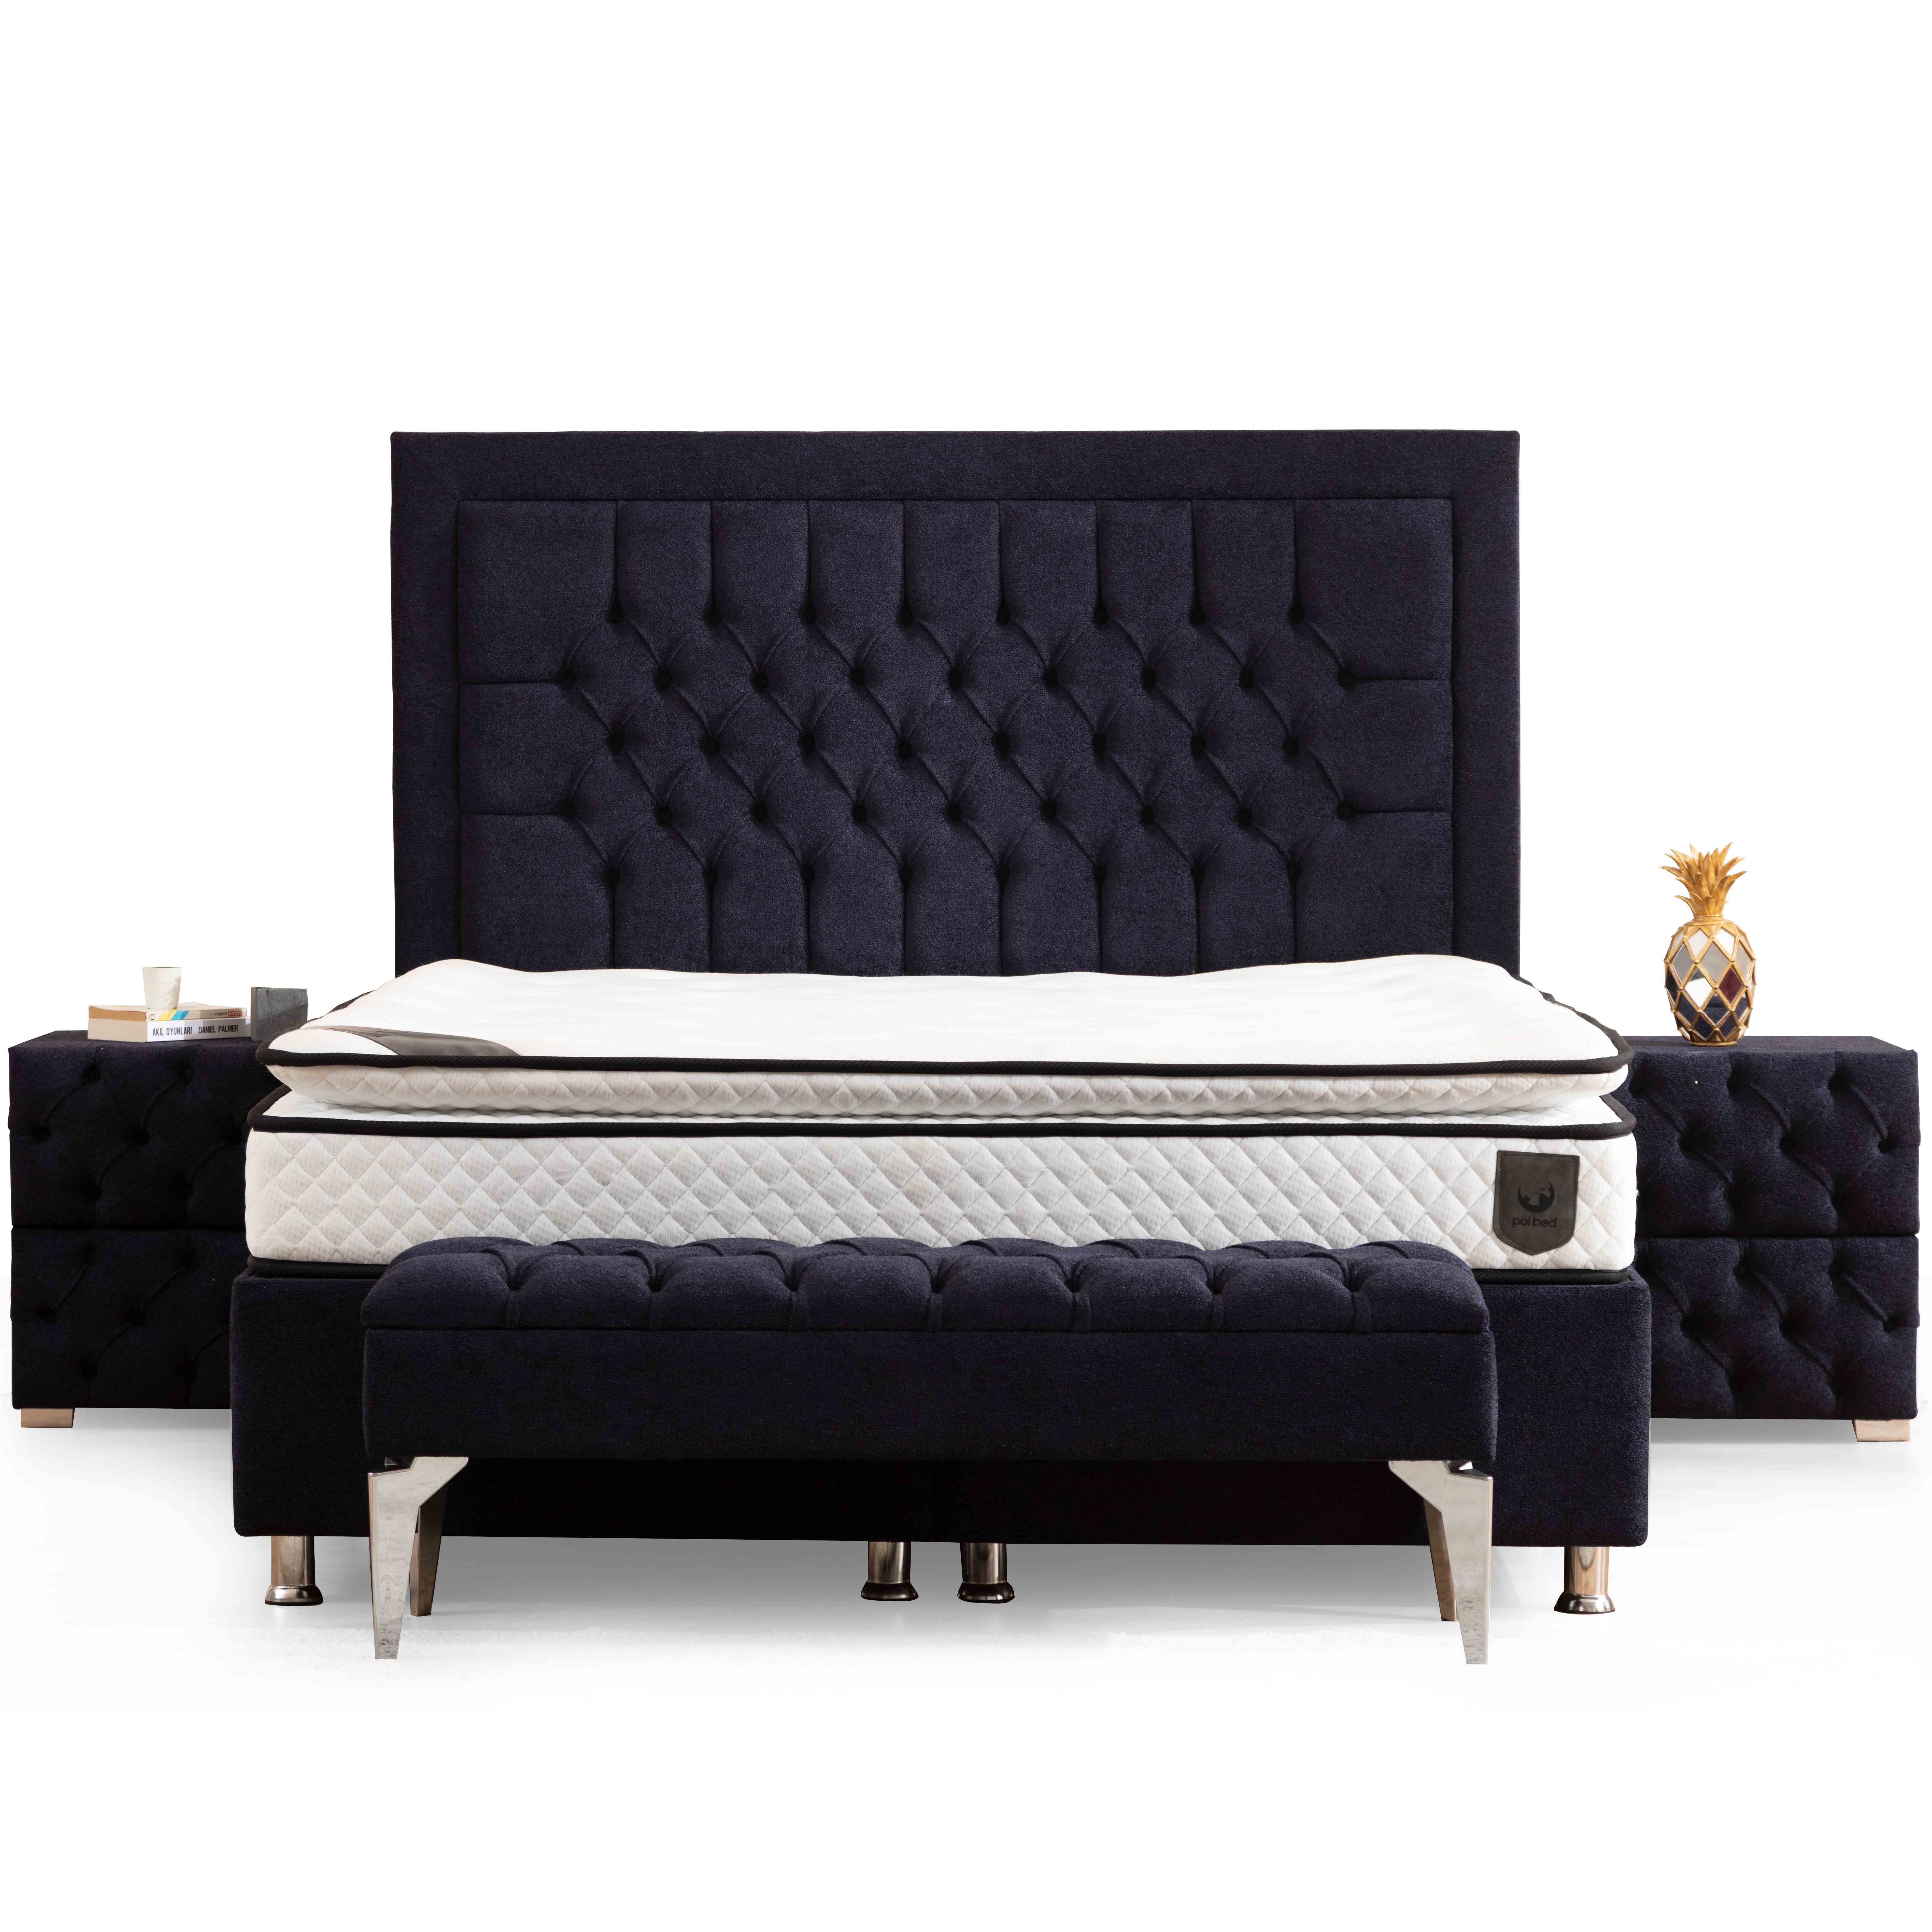 Astom Bed With Storage 90x190 cm